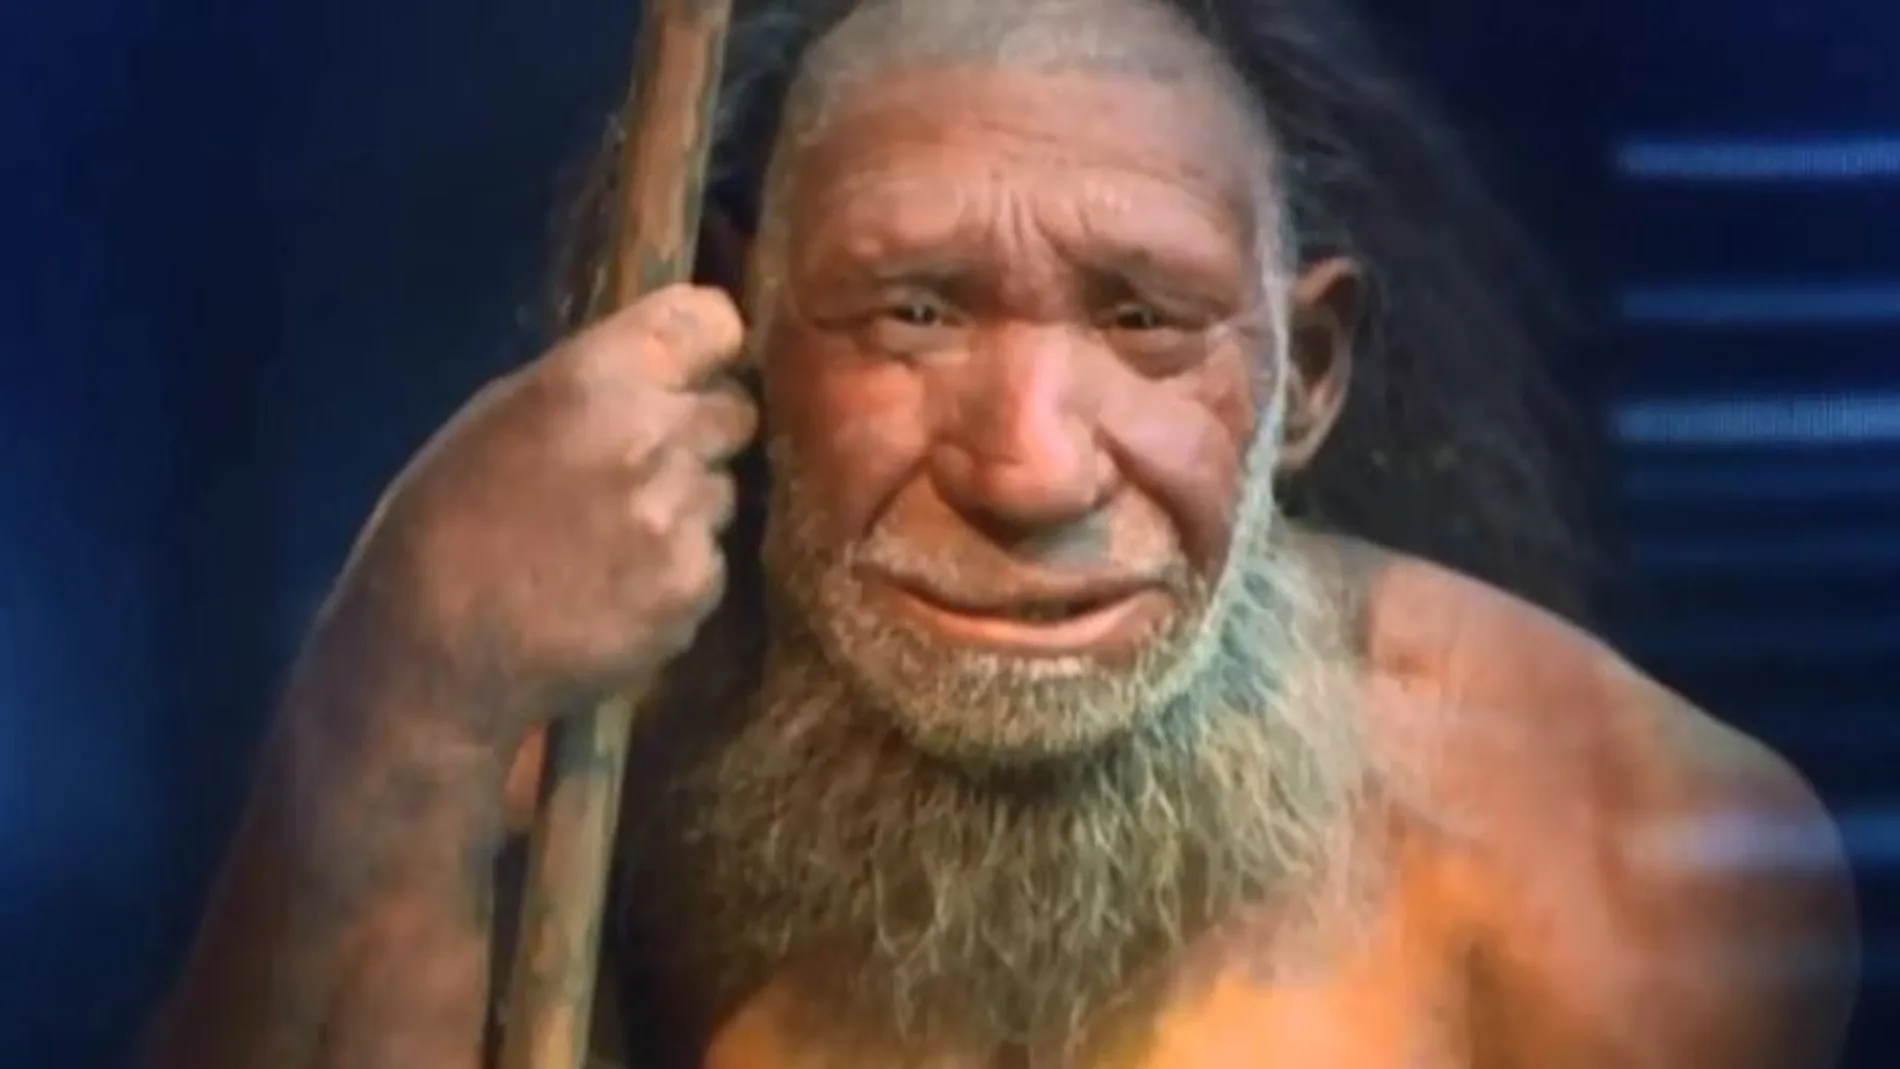 La corteza de álamo, la “aspirina” de los neandertales